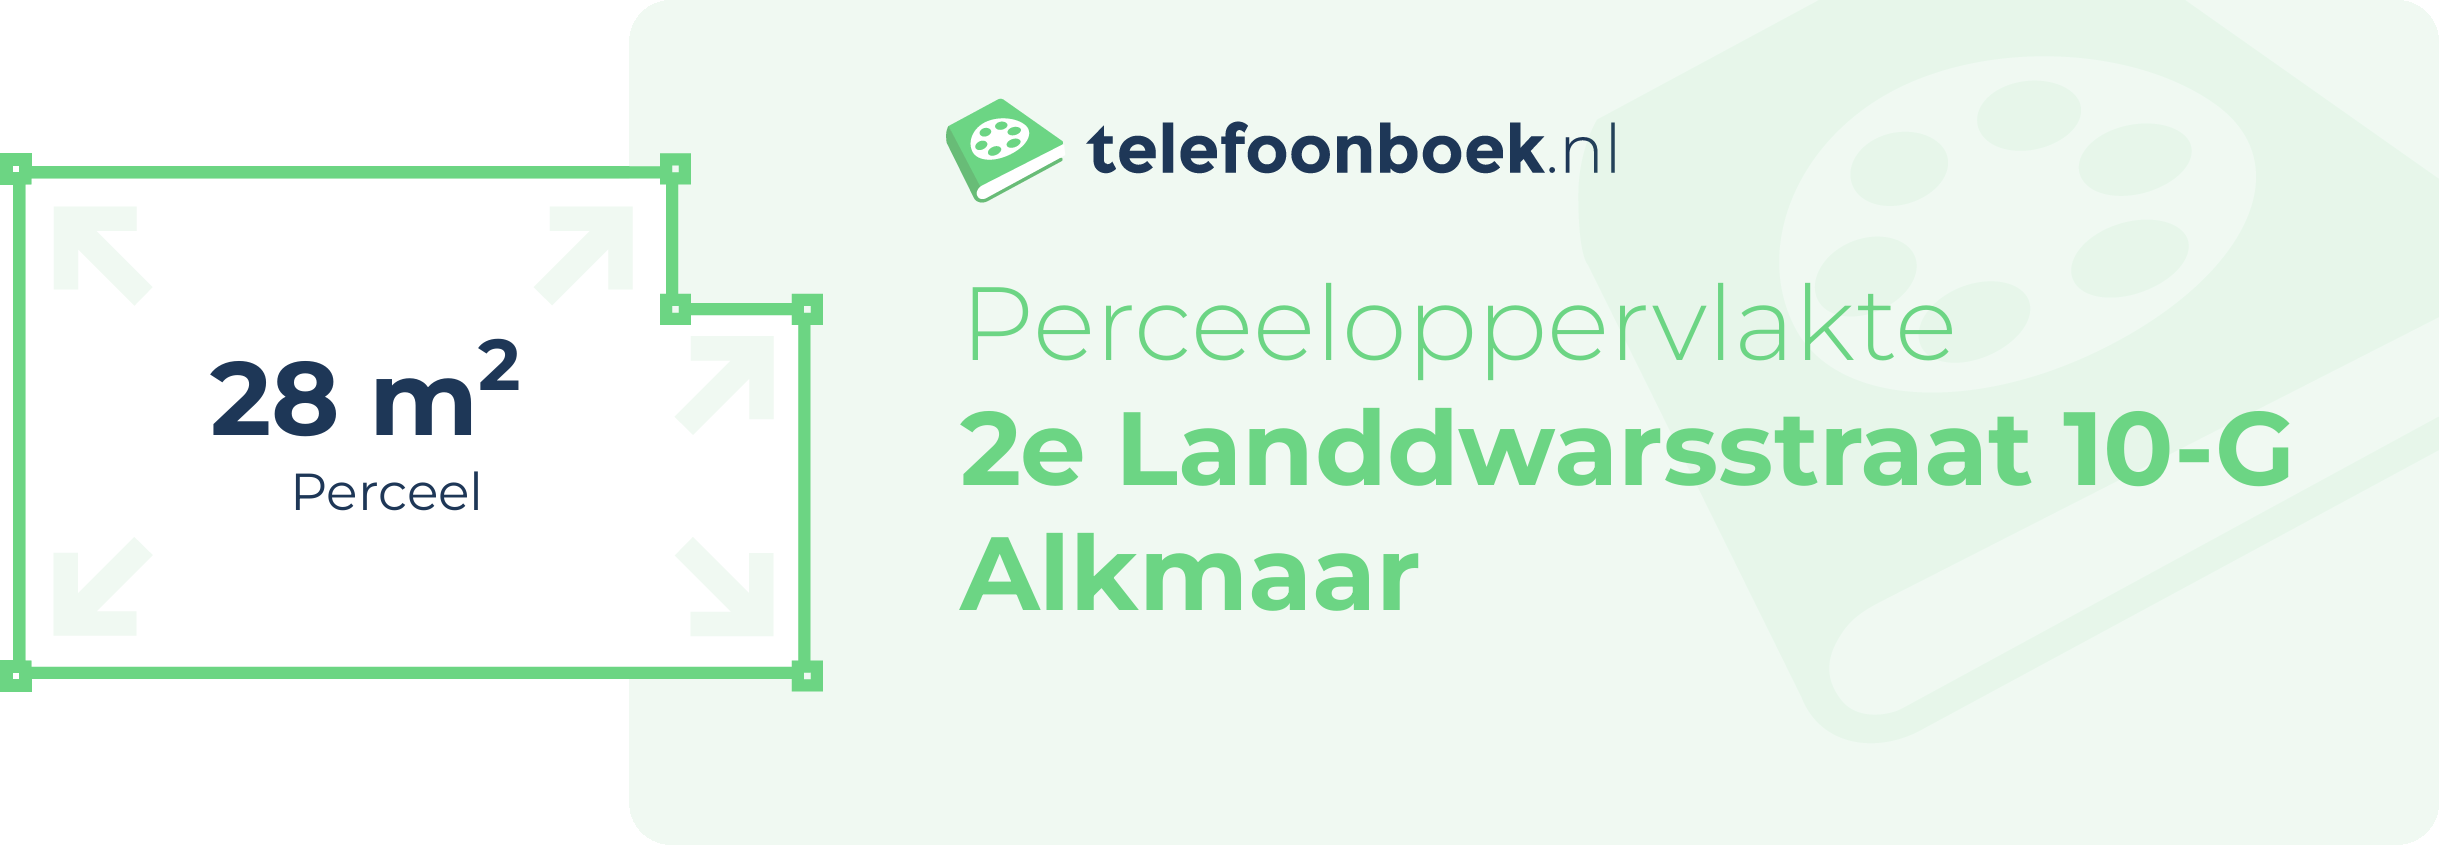 Perceeloppervlakte 2e Landdwarsstraat 10-G Alkmaar